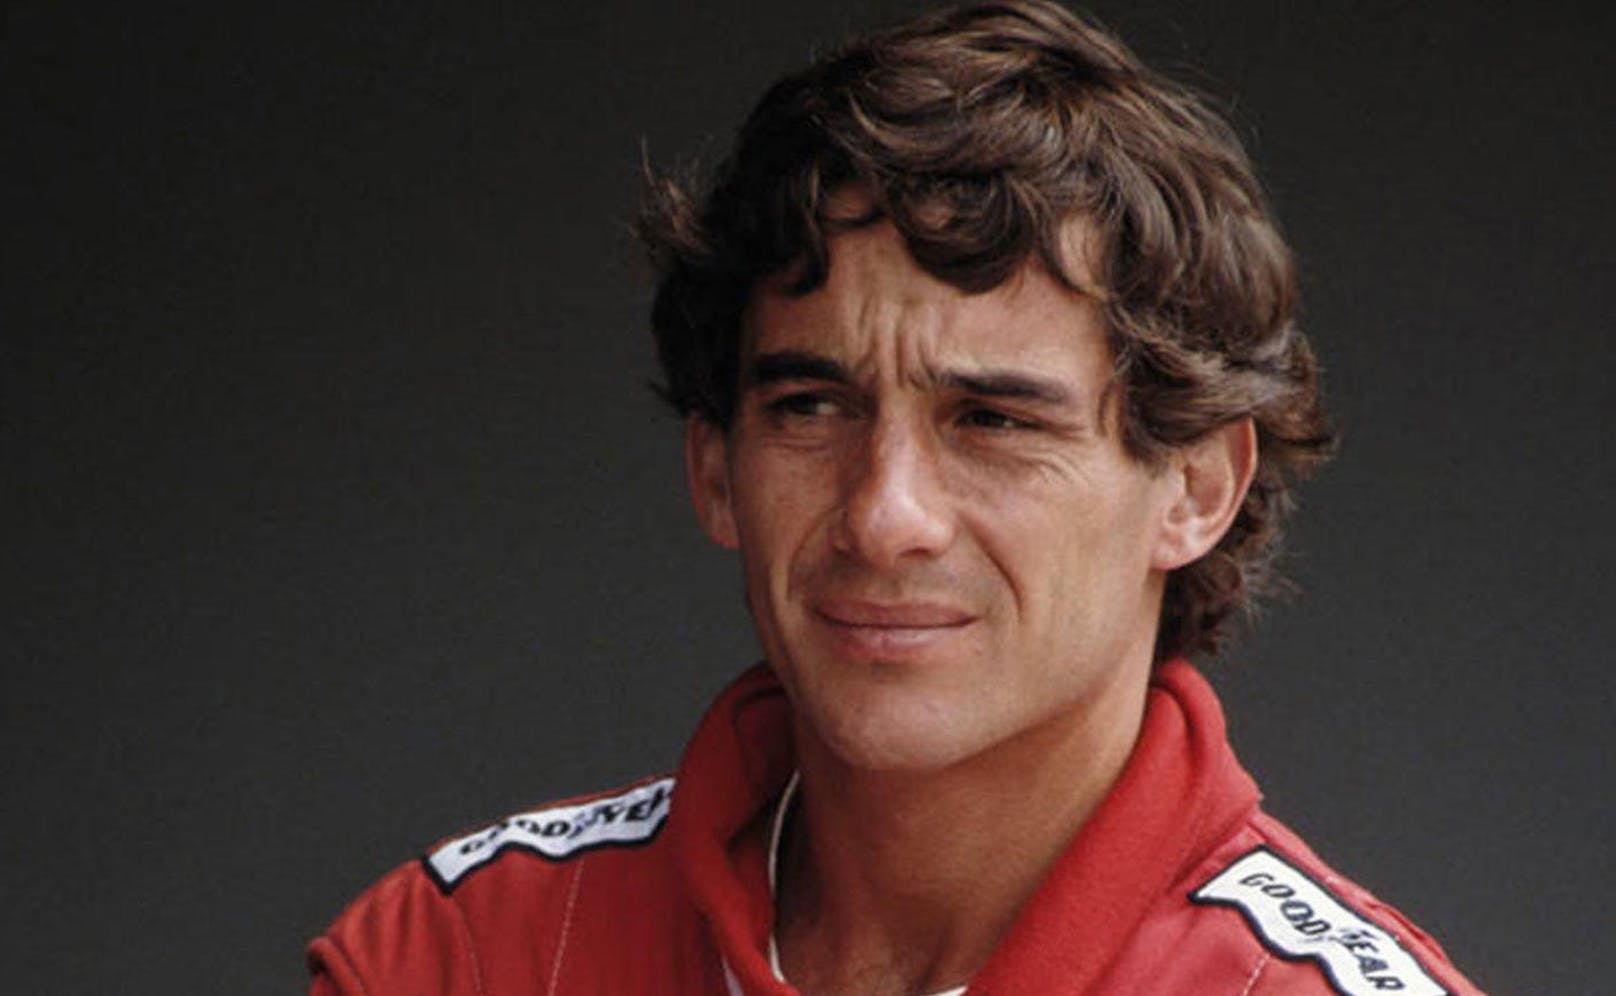 Der 800-PS-Bolide trägt in Erinnerung an den dreifachen brasilianischen F1-Champion Ayrton Senna dessen Namen.